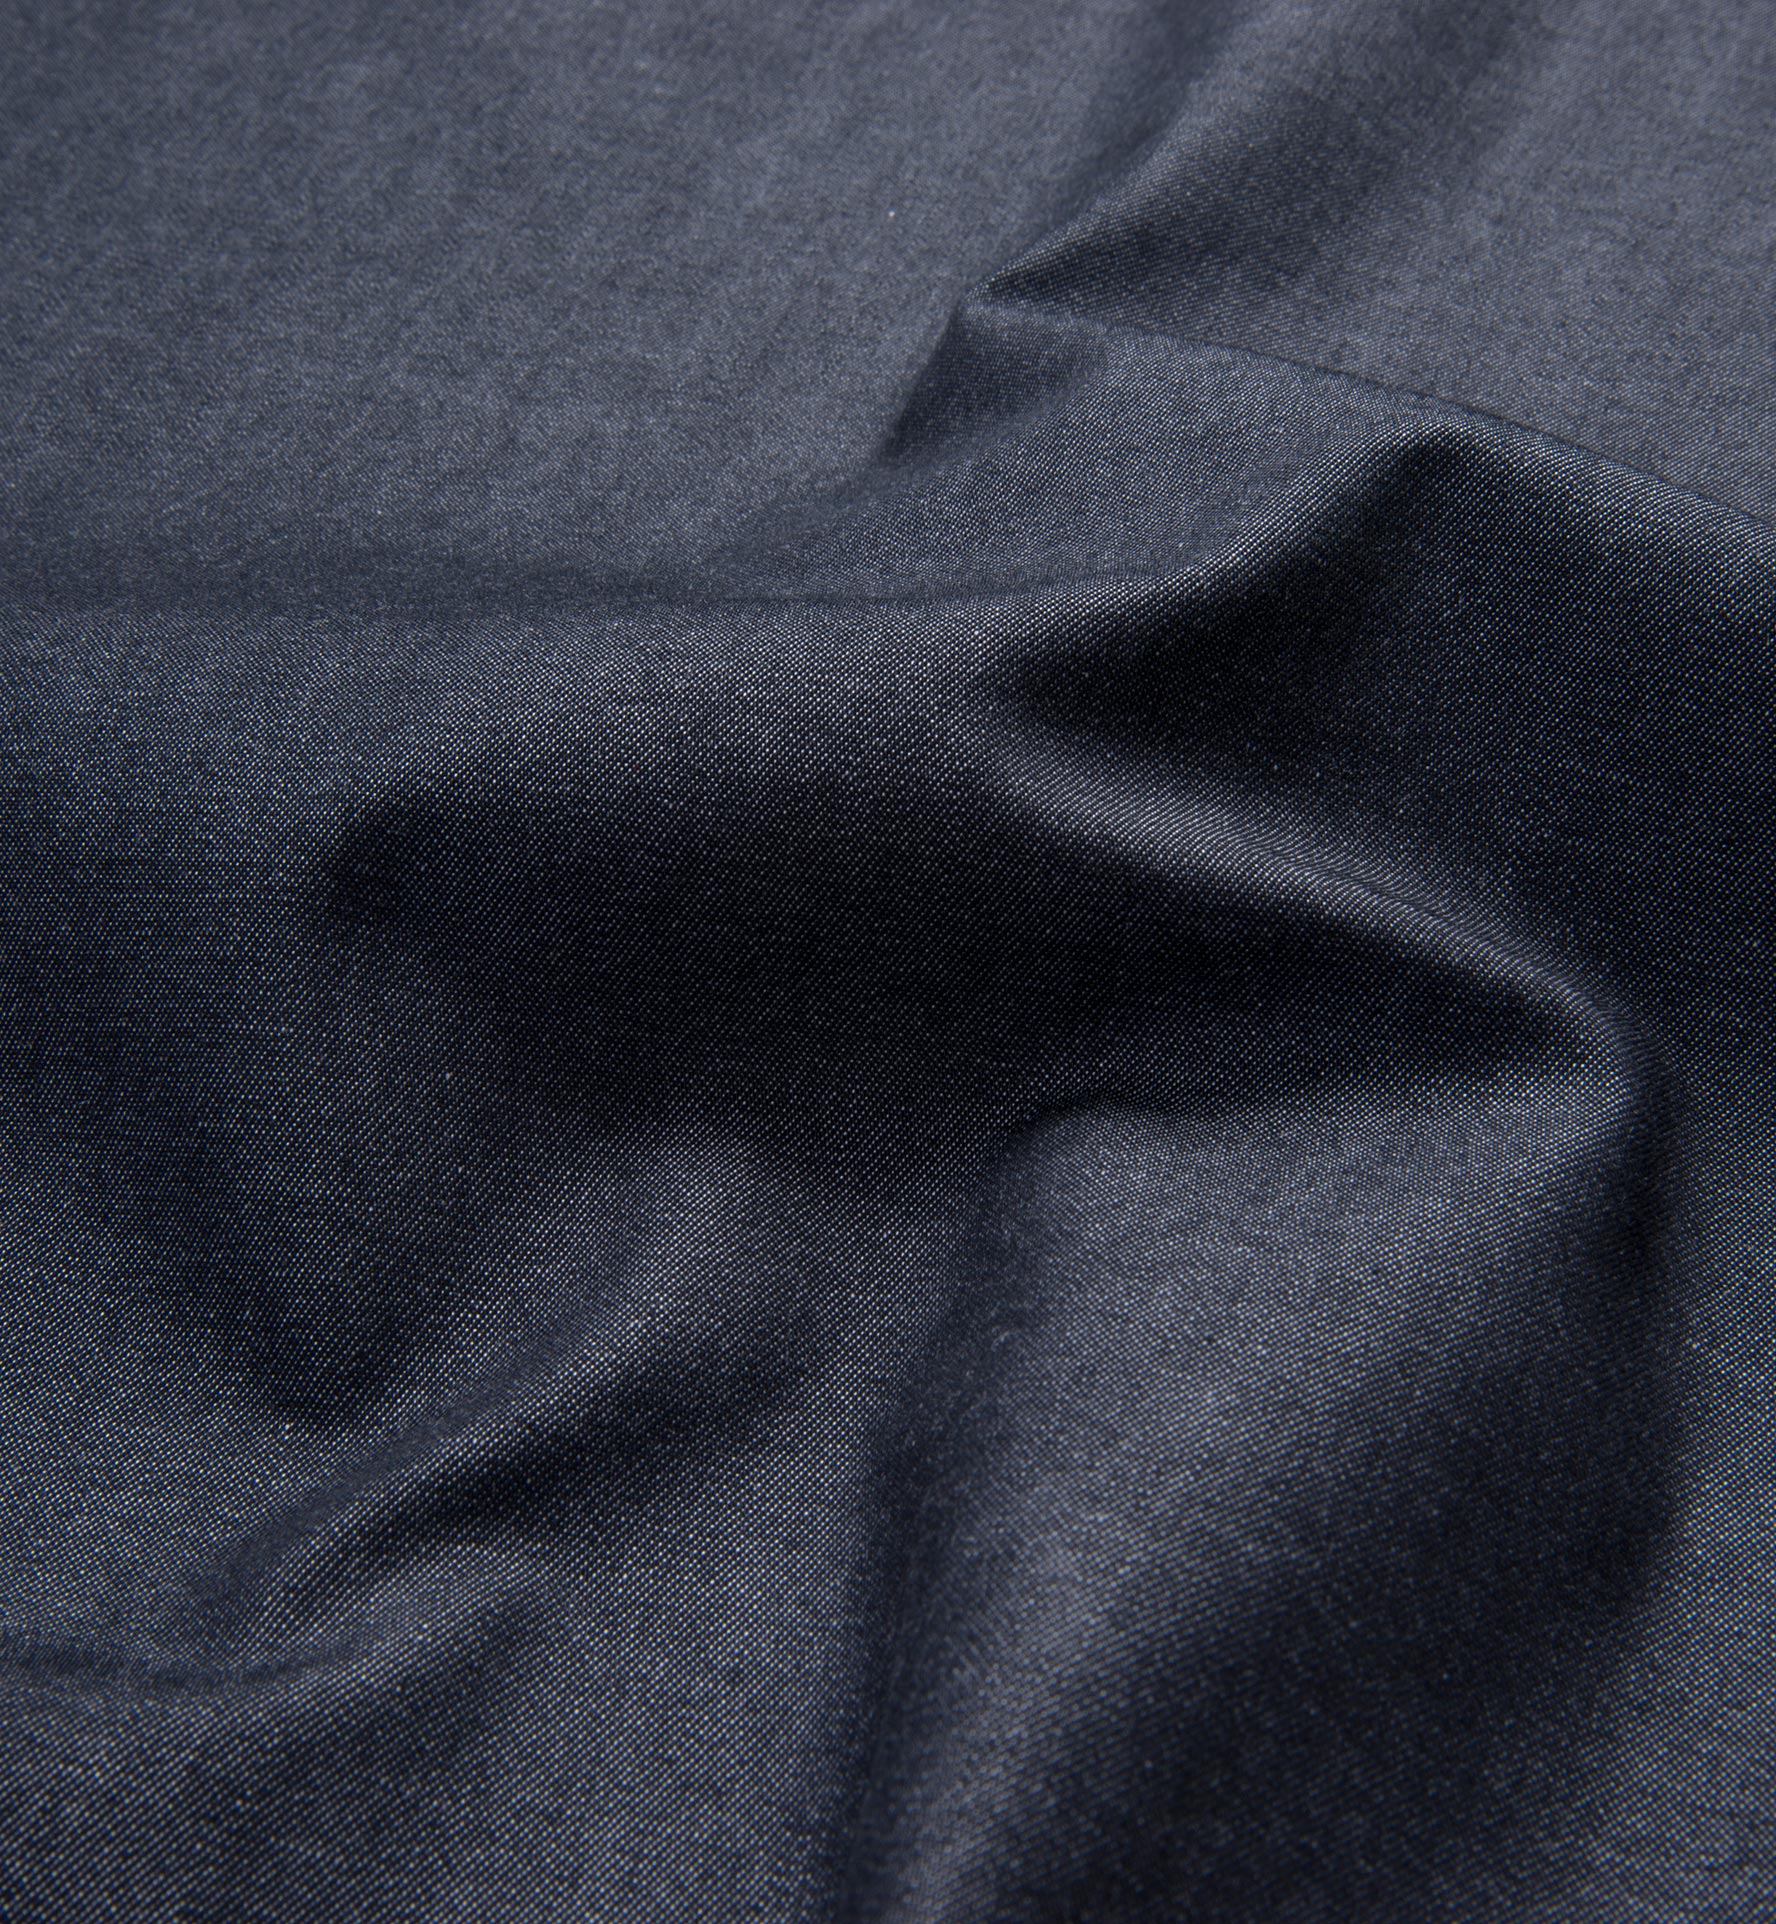 Crosby Black Denim Shirts by Proper Cloth